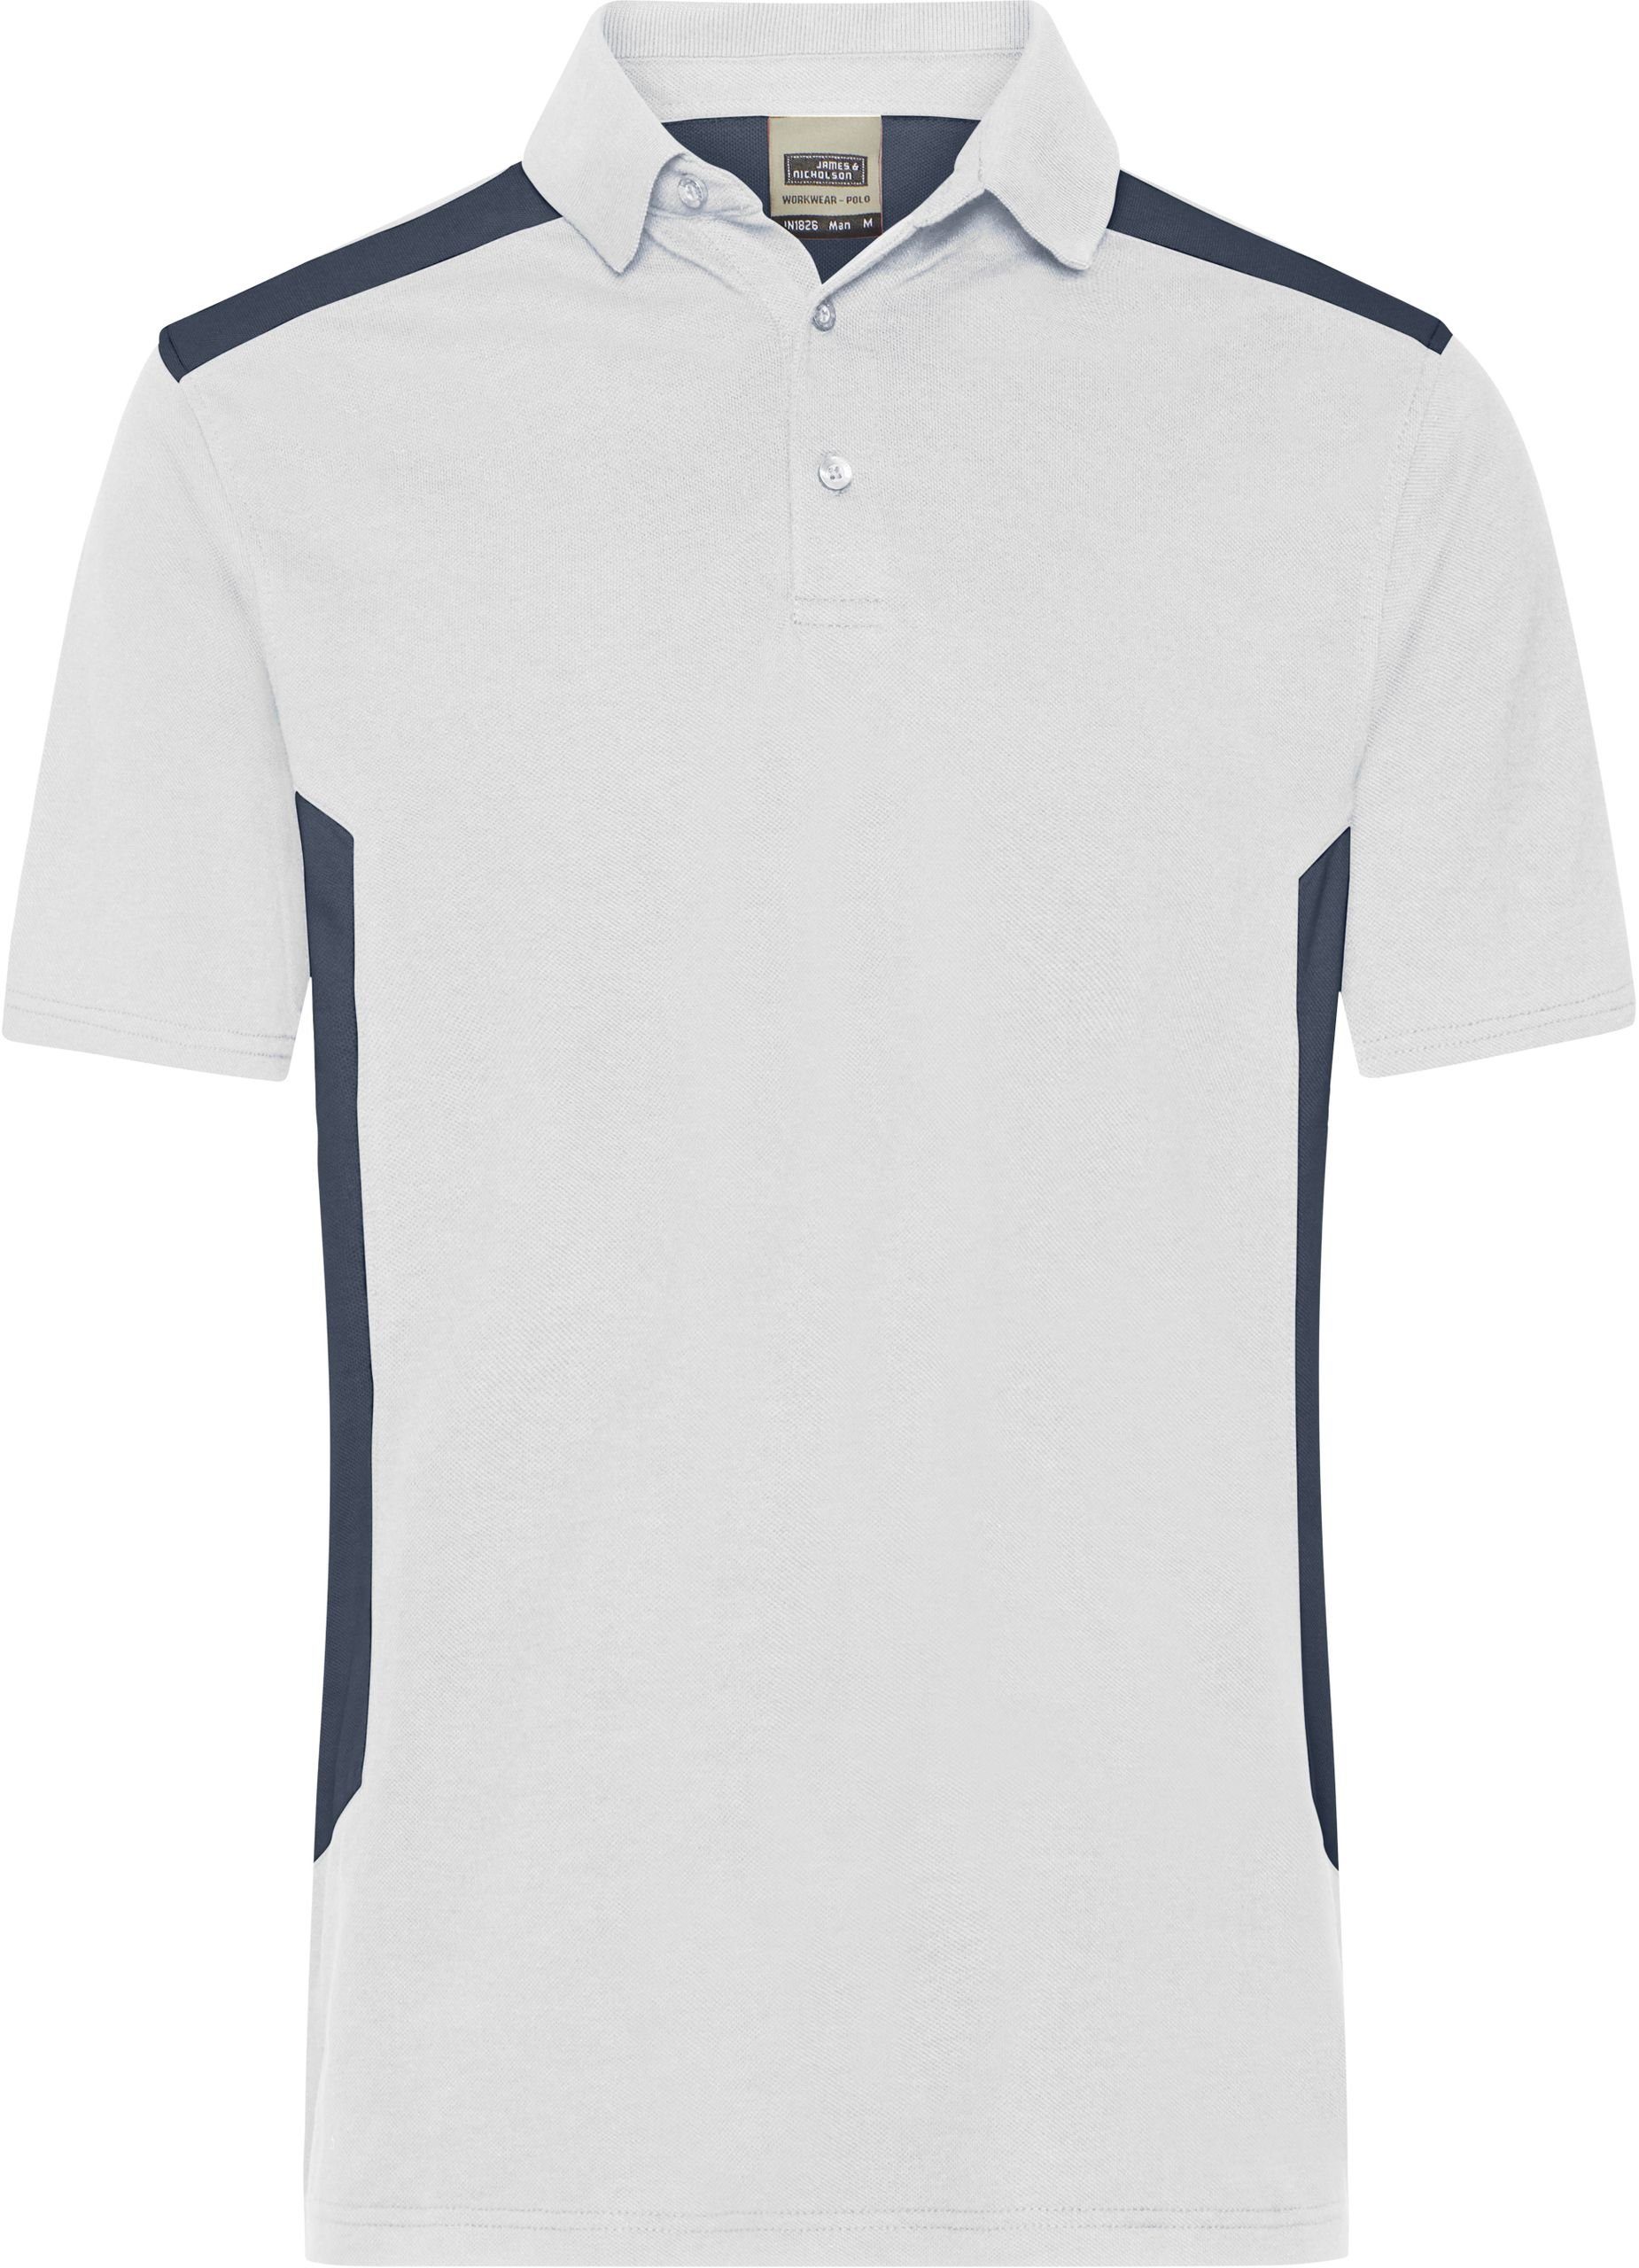 James & Nicholson Poloshirt Herren Workwear Polo - Strong white/carbon